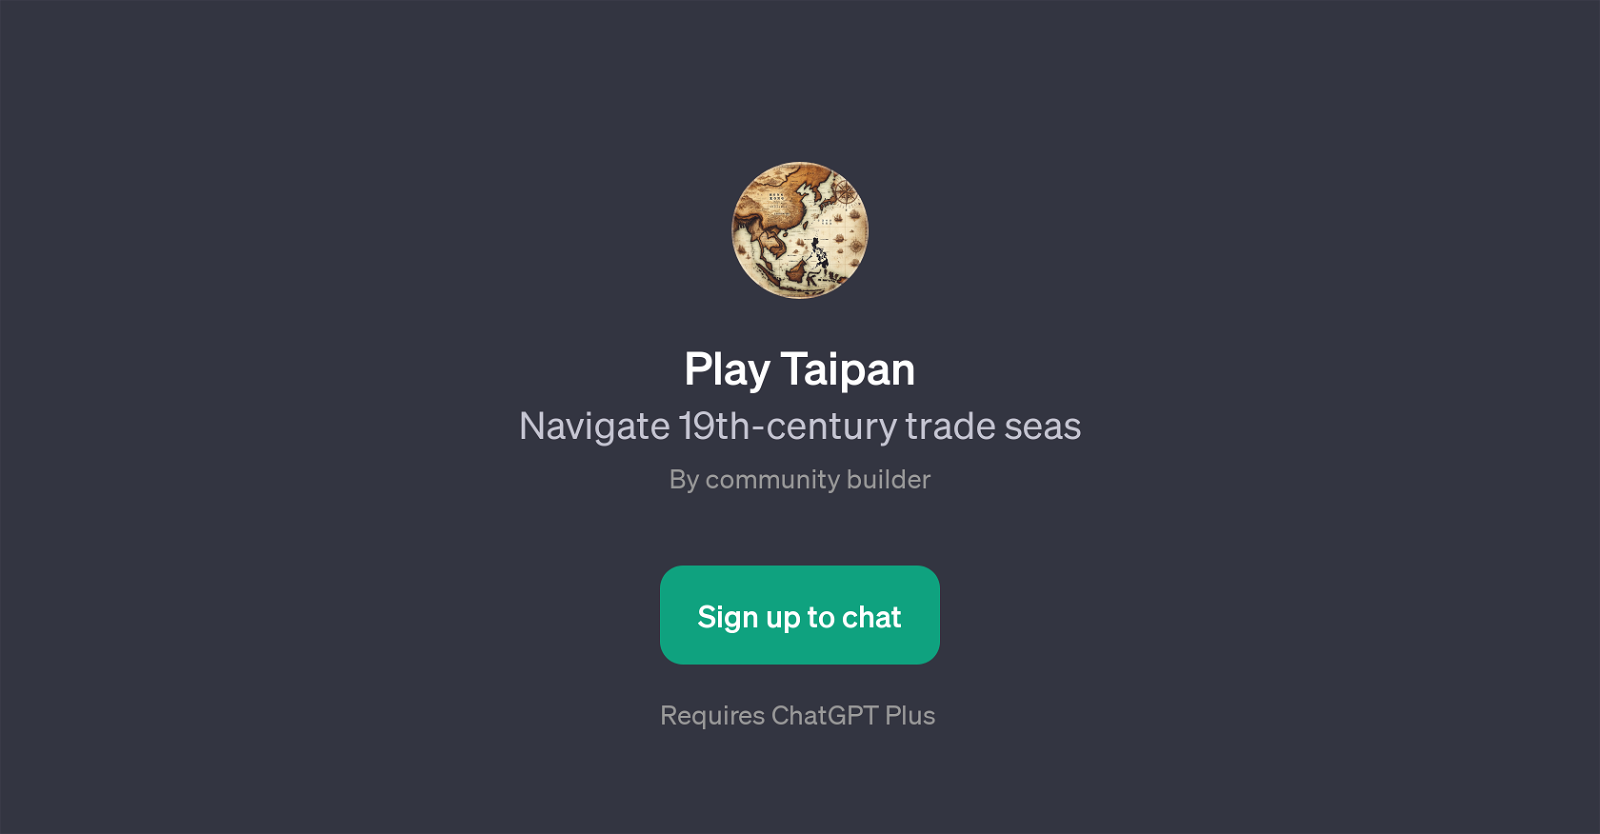 Play Taipan website